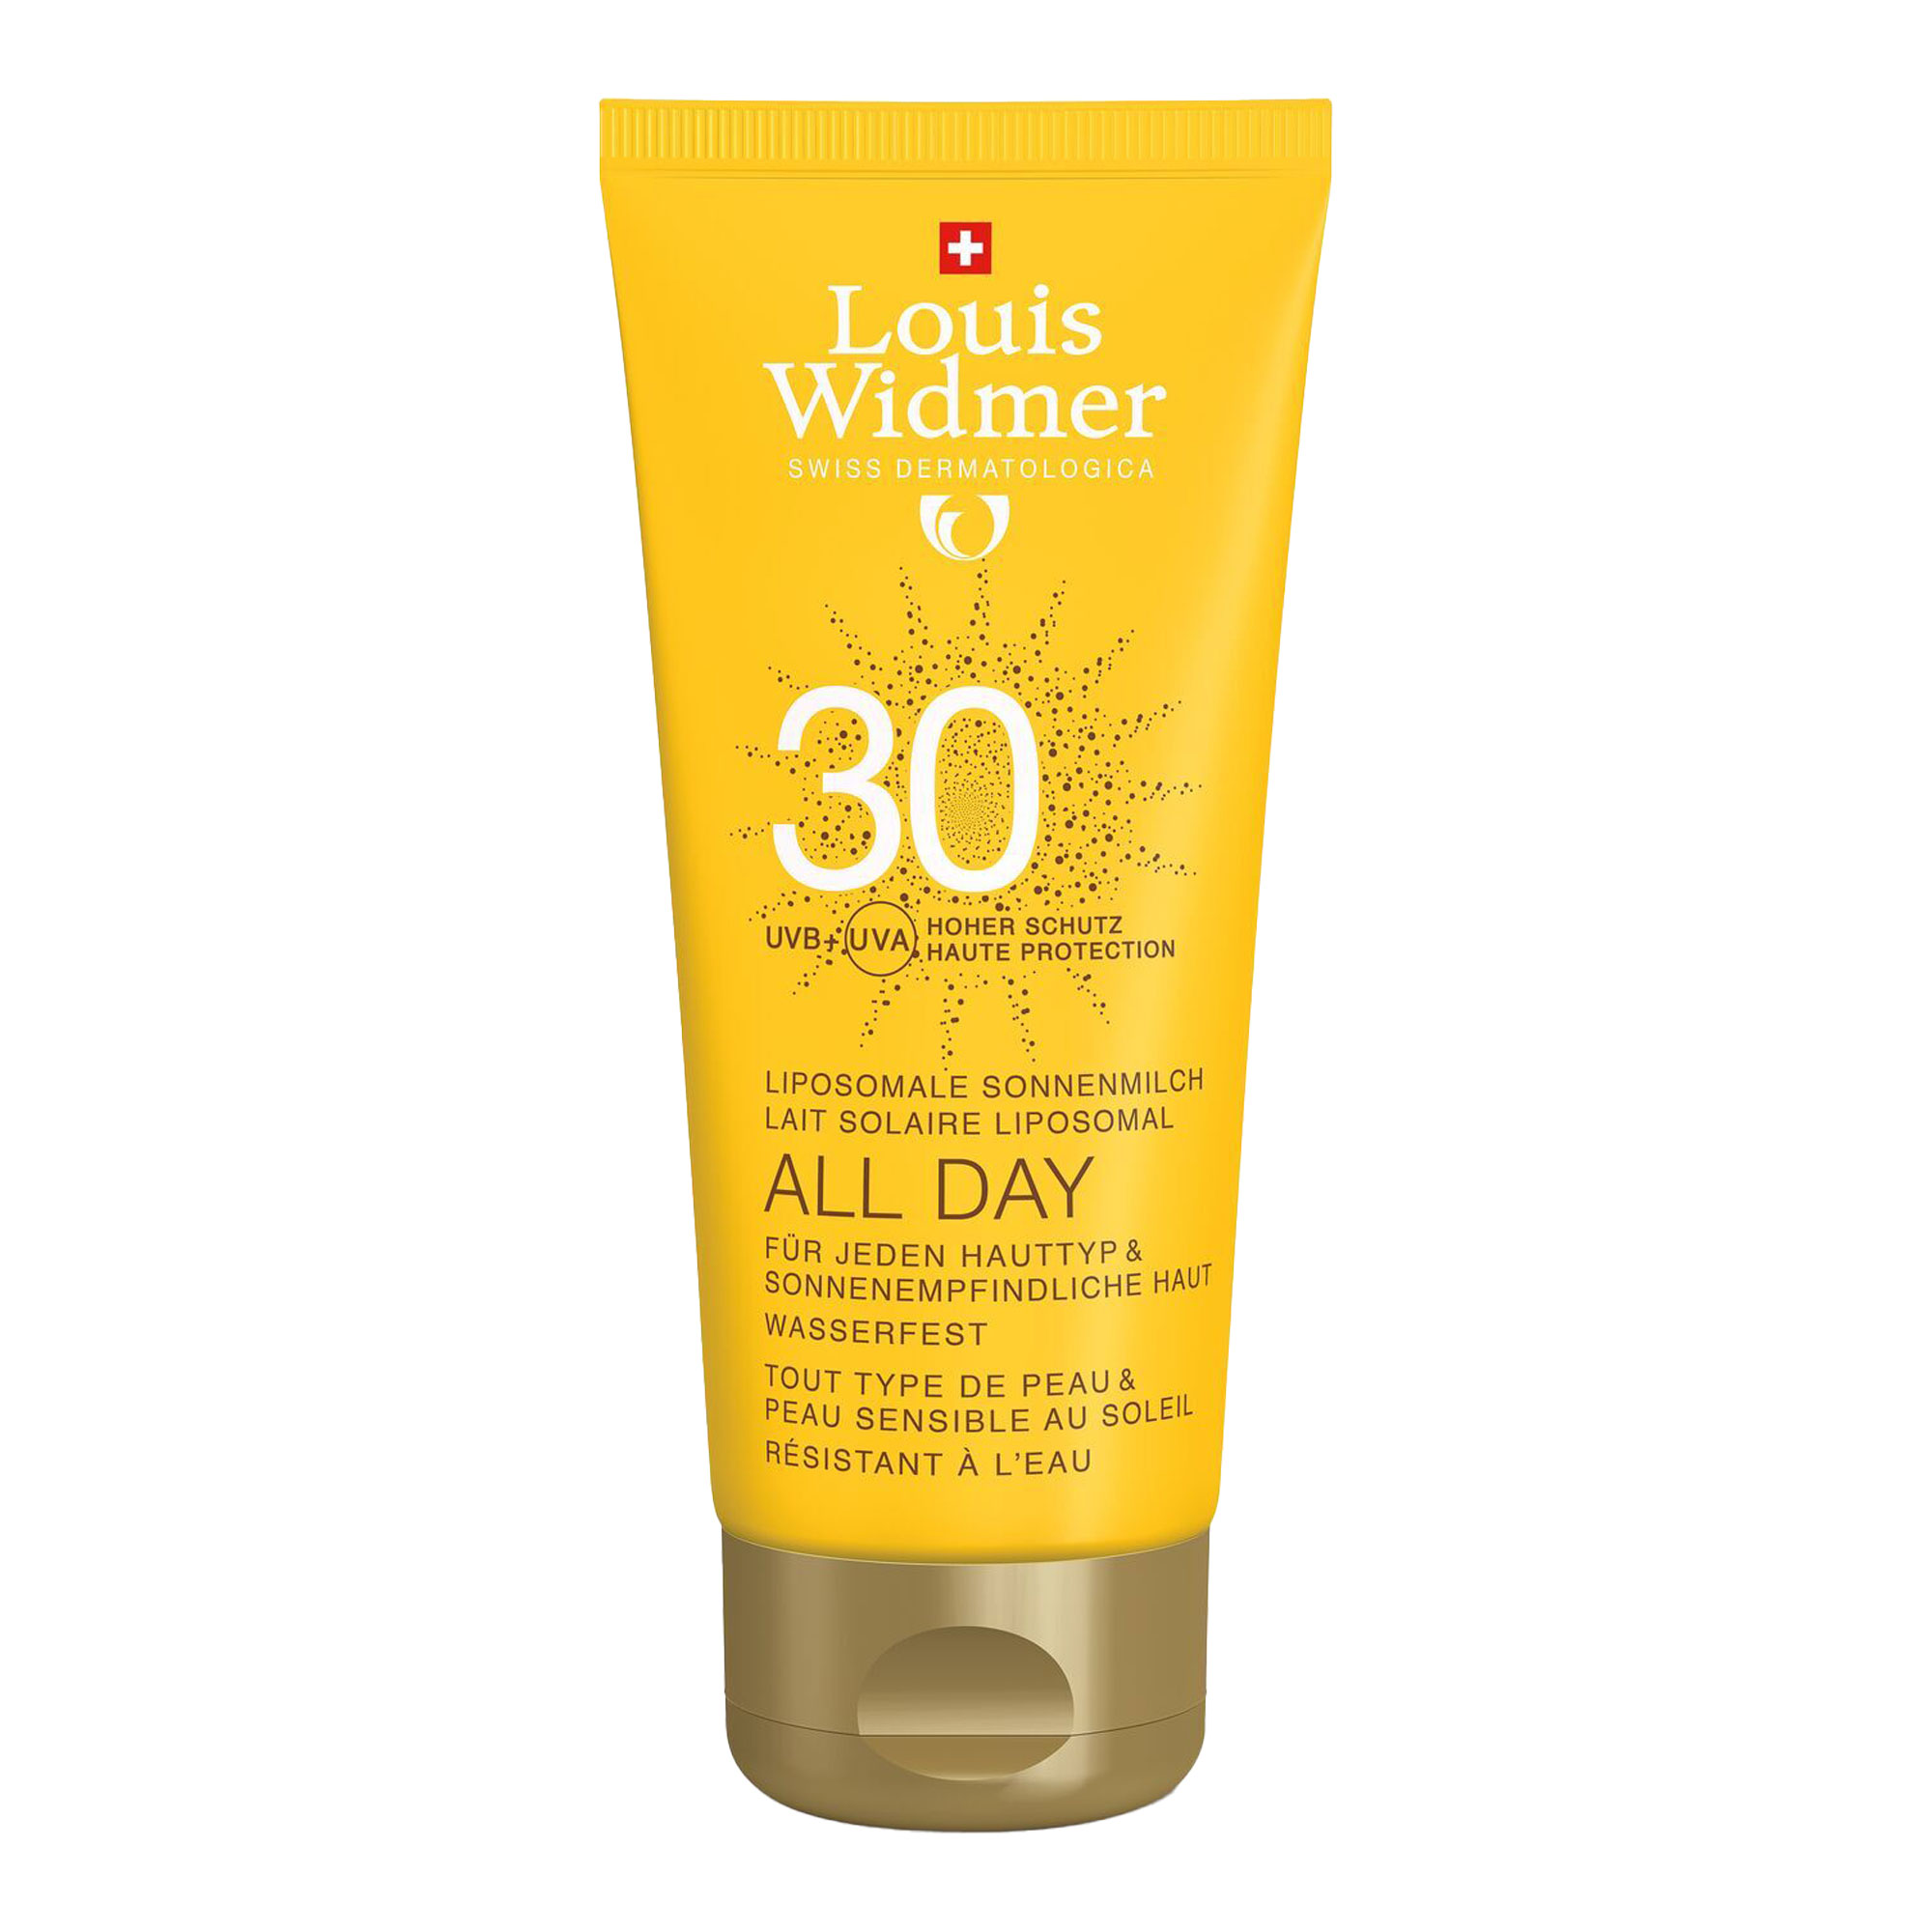 Sonnenmilch mit LSF 30. Für jeden Hauttyp & sonnenempfindliche Haut. Sonnenpflege und -schutz den ganzen Tag. Ohne Parfum.